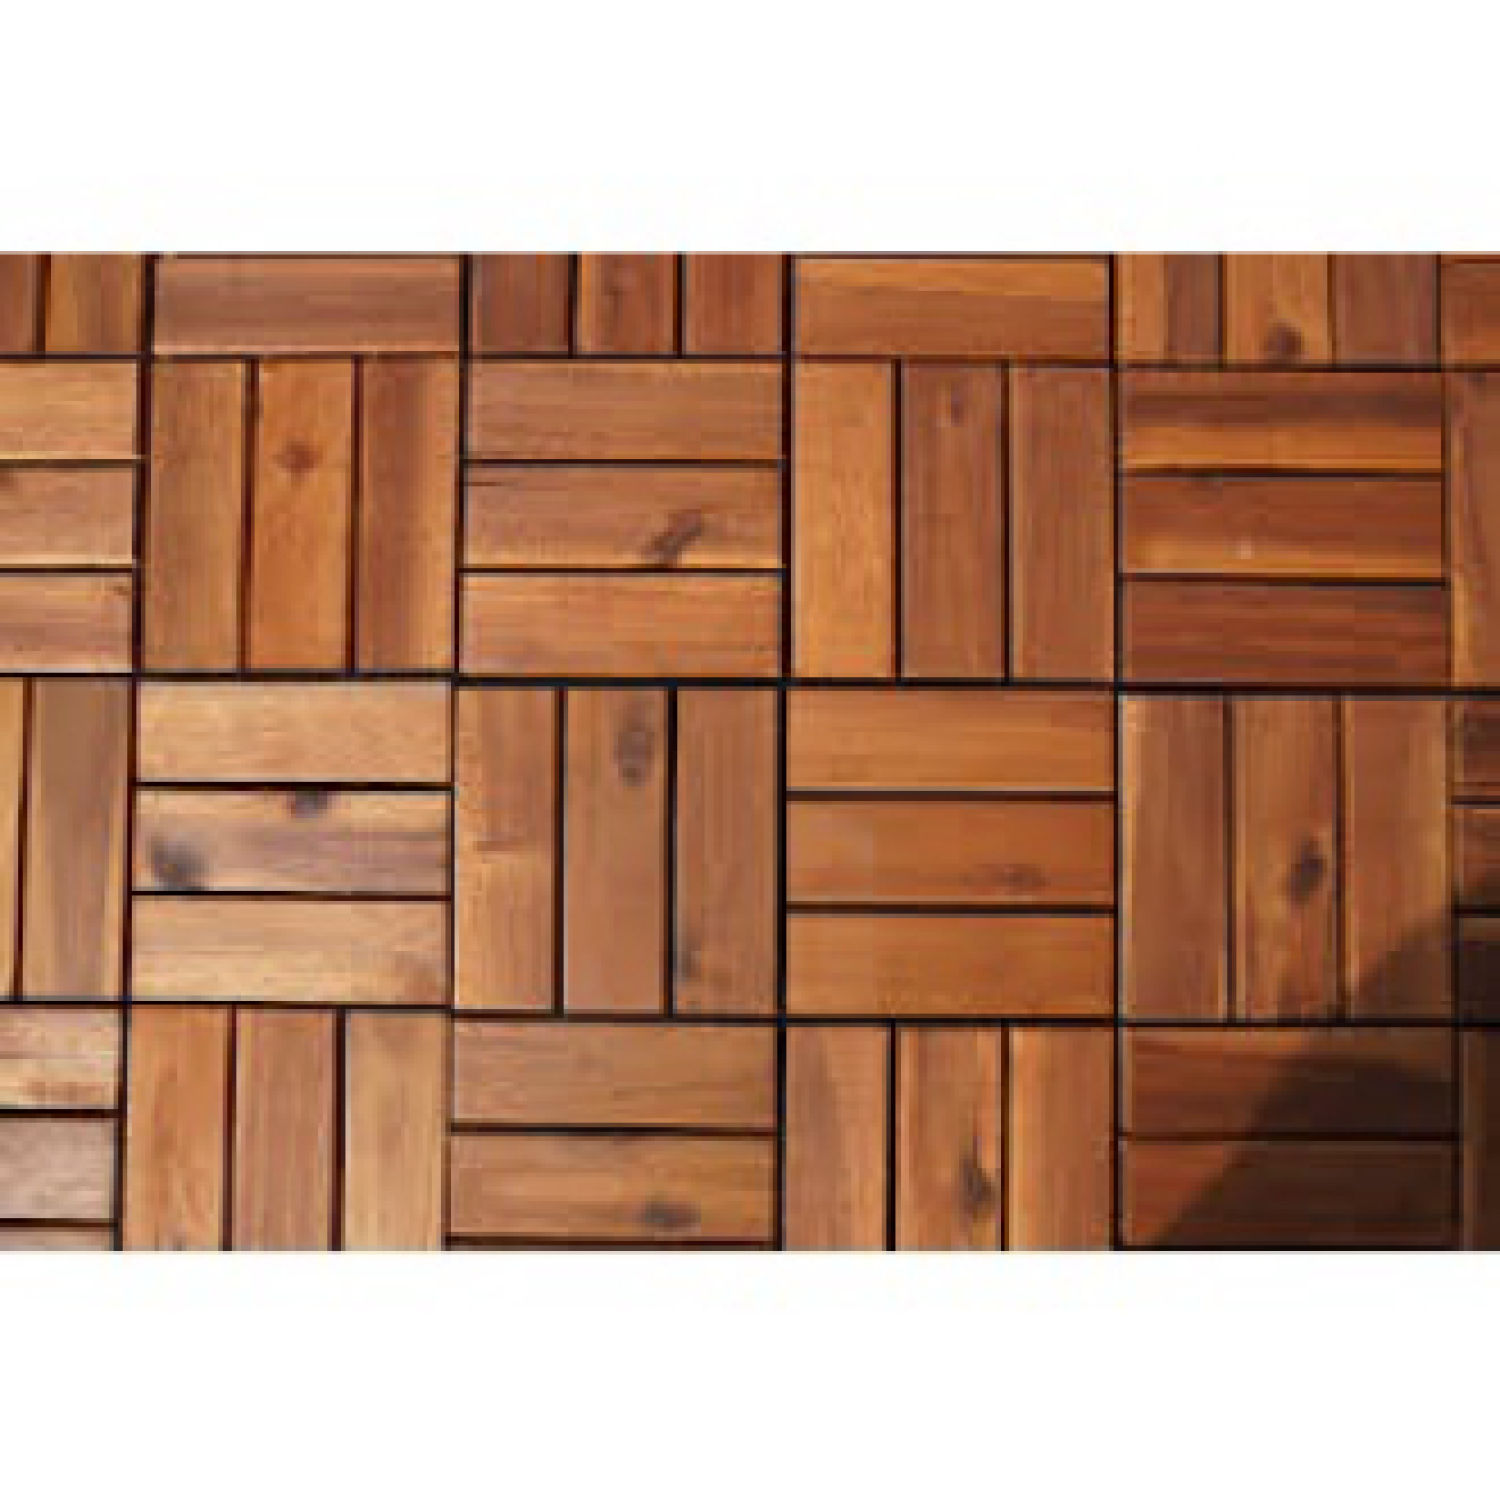 10 decking tiles of natural wood for indoor outdoor-DIY-balcony floor